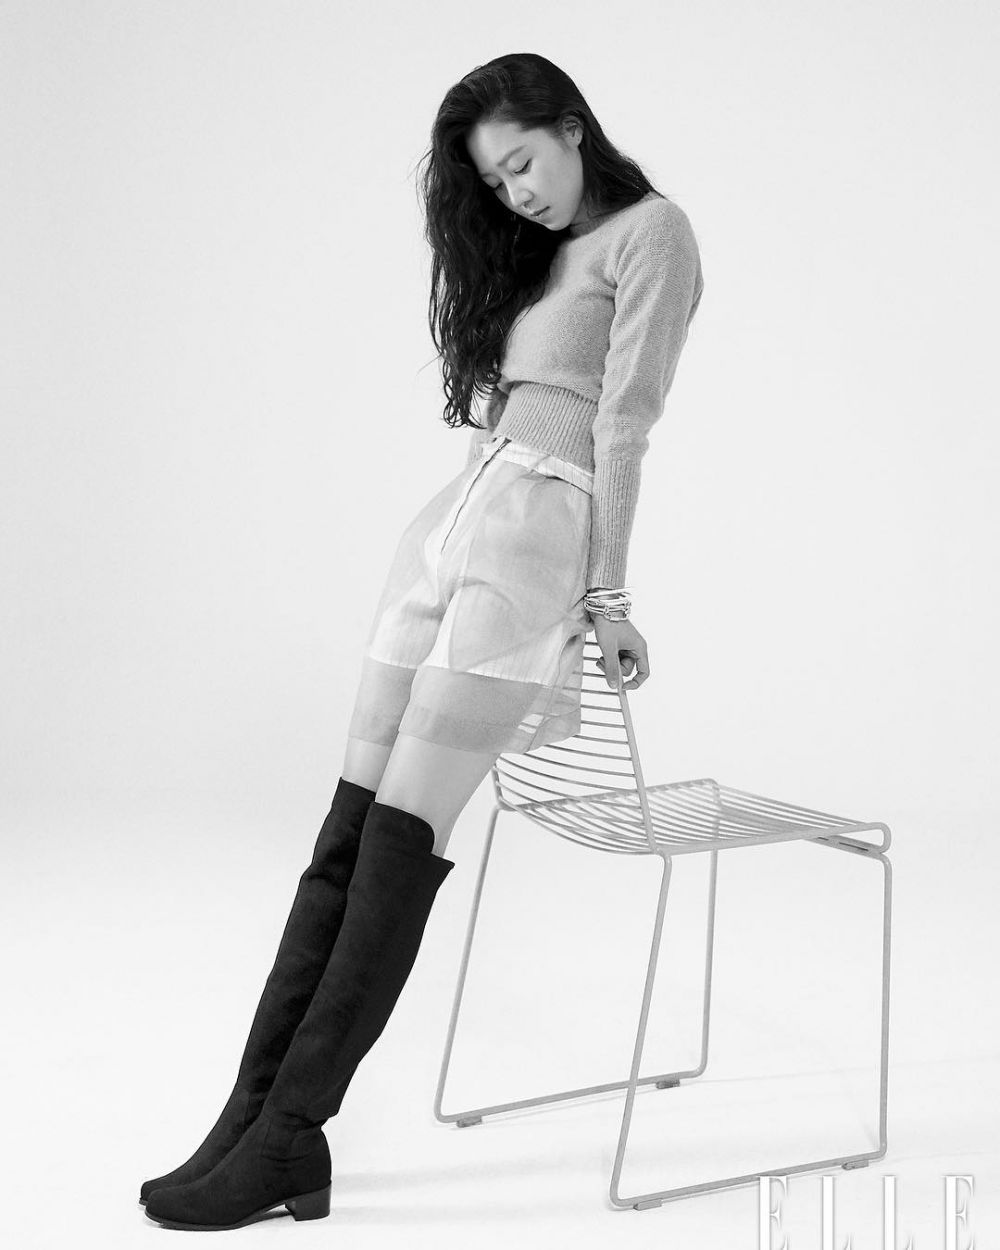 7 Aktris Korea ini punya tubuh tinggi semampai, bak model